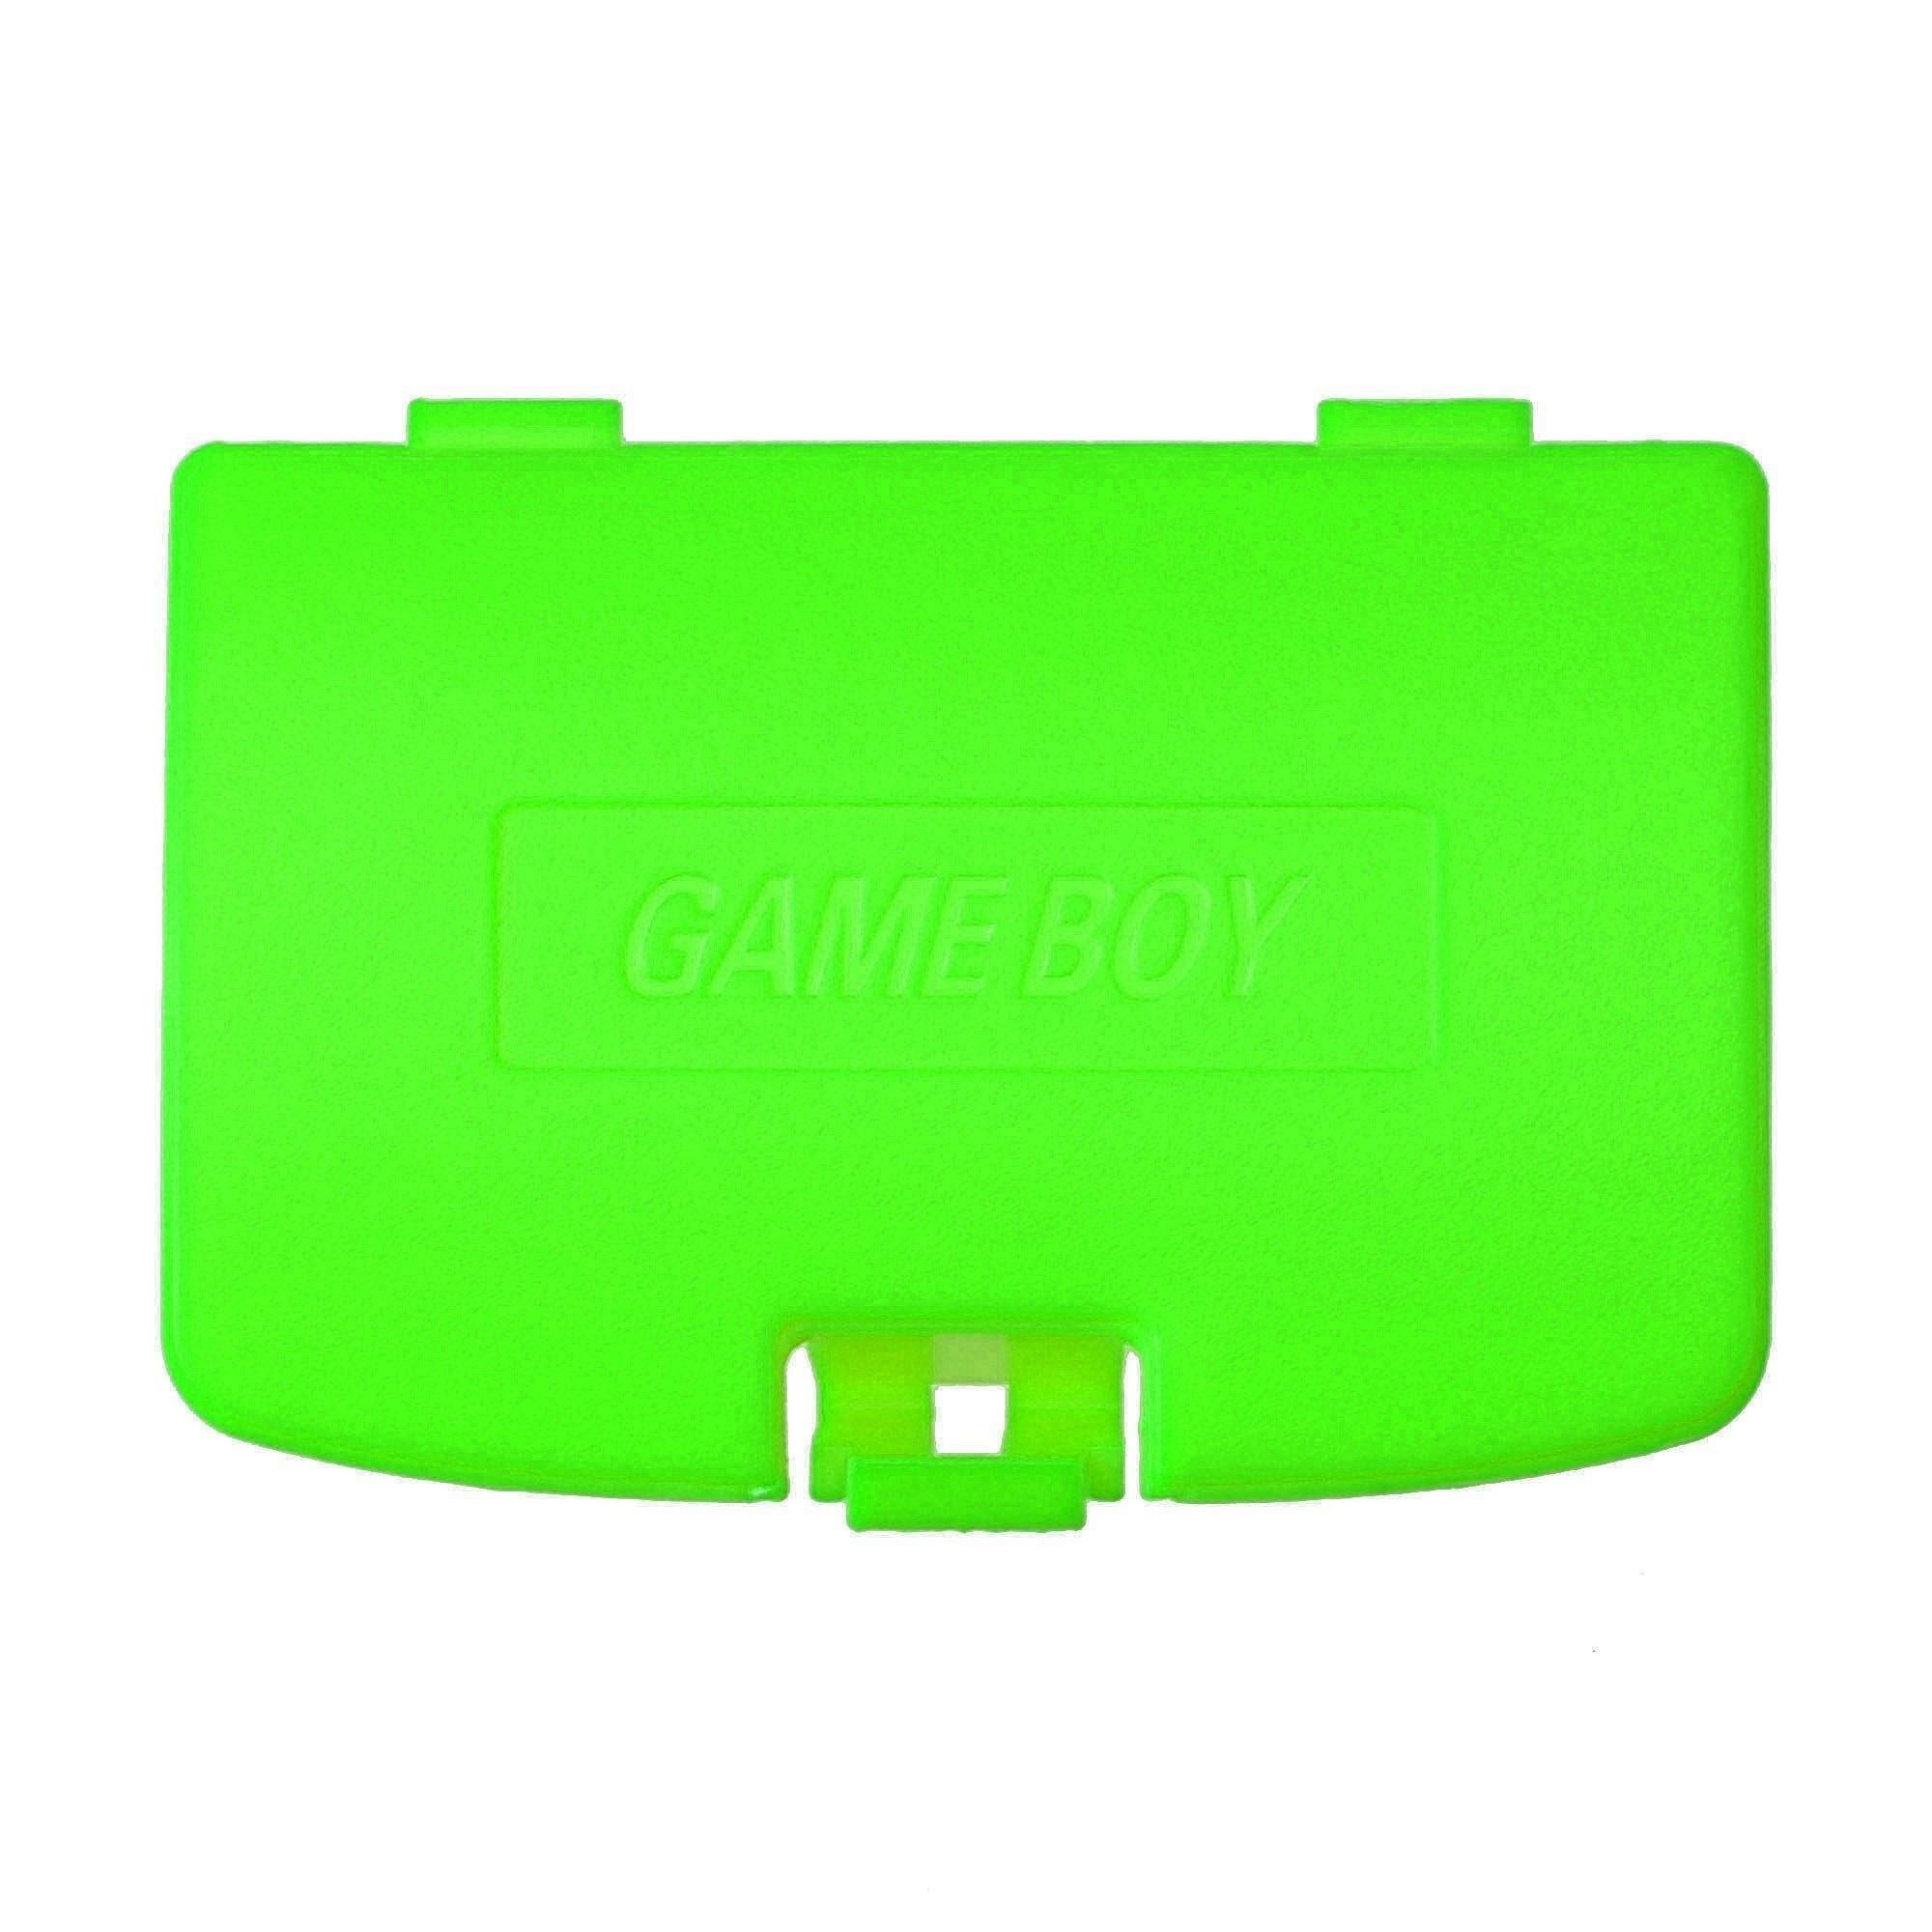 Batterideksel for GameBoy Color - RetroGaming.no